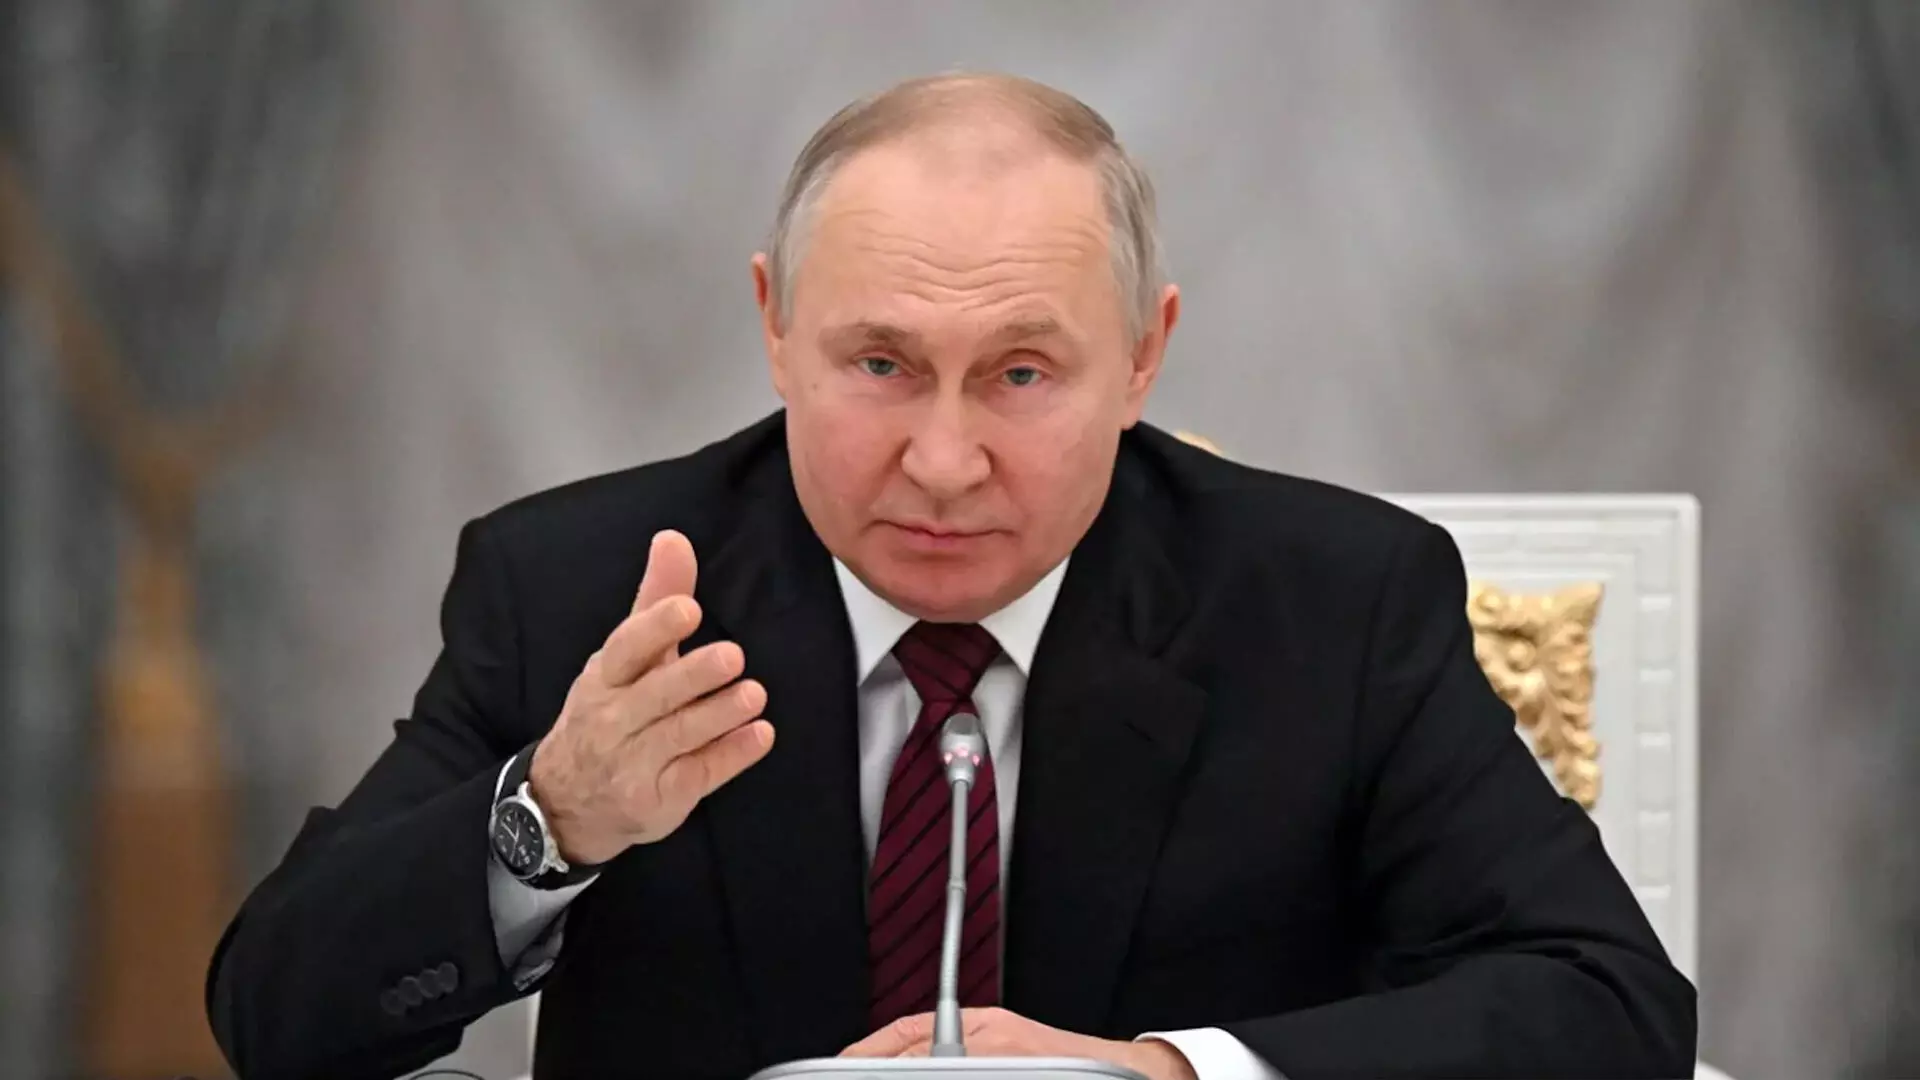 रूस मॉस्को हमले से आईएसआईएस के संबंध पर टिप्पणी करने से इनकार क्यों